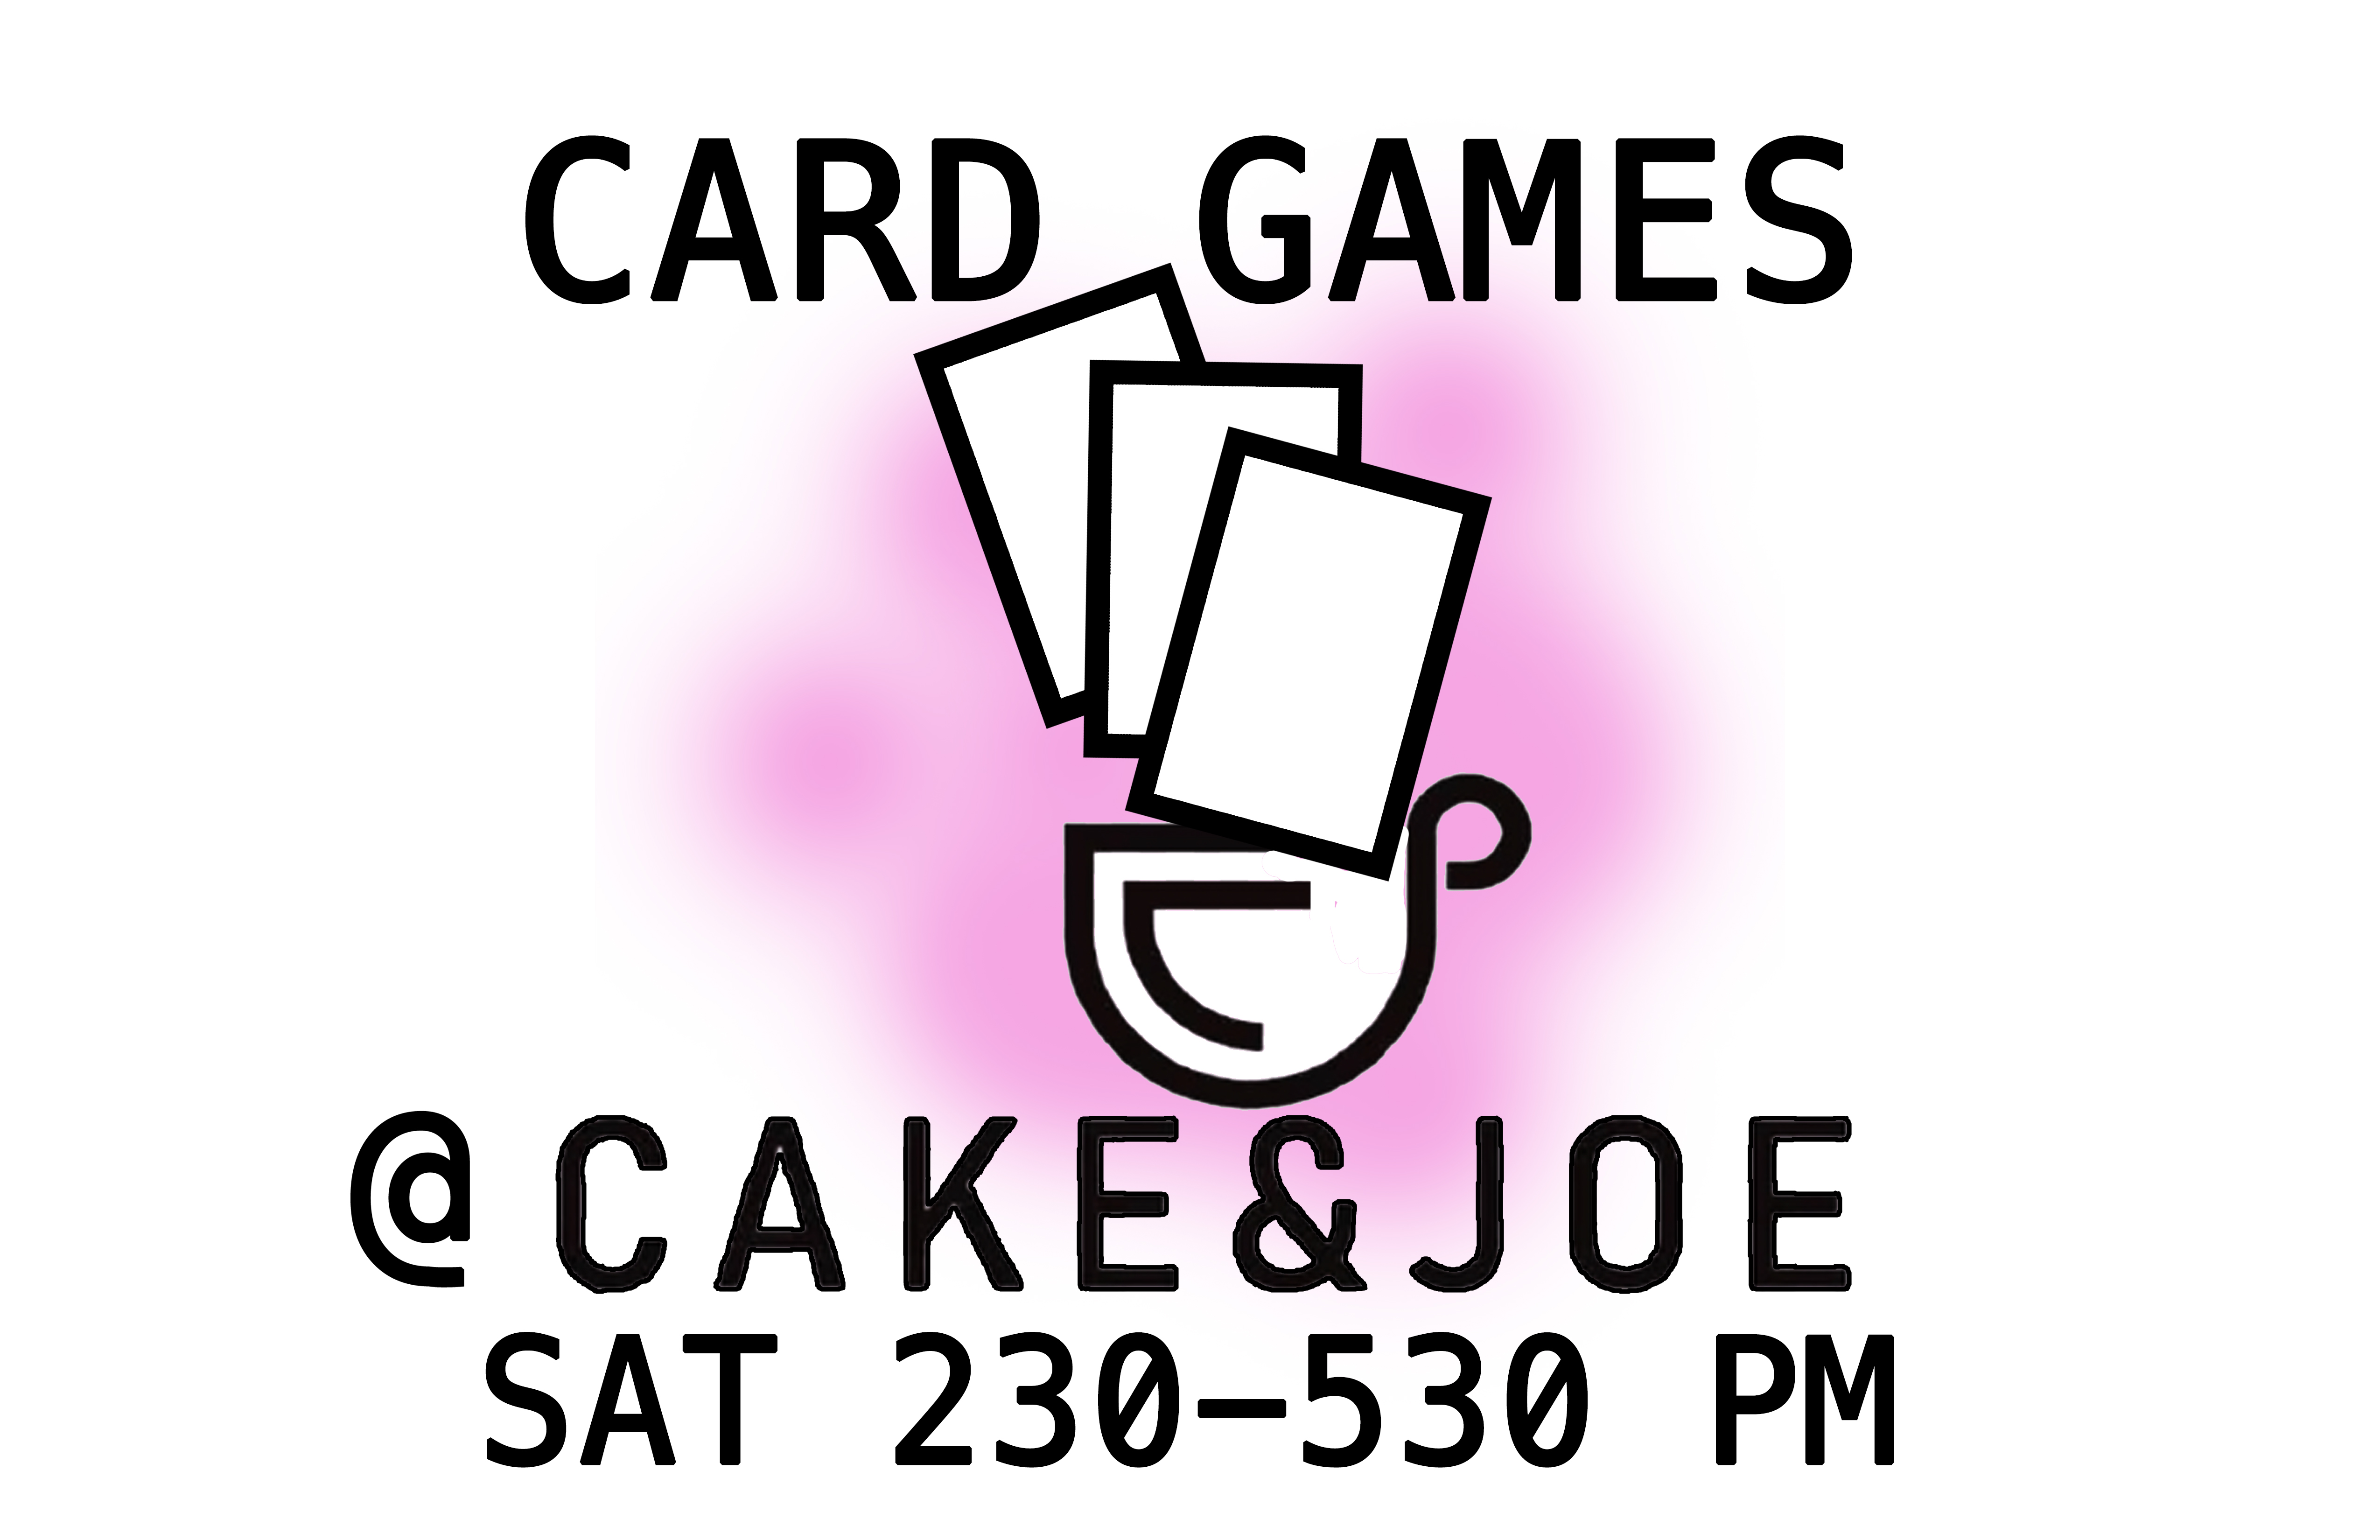 Card Game Day at Cake and Joe